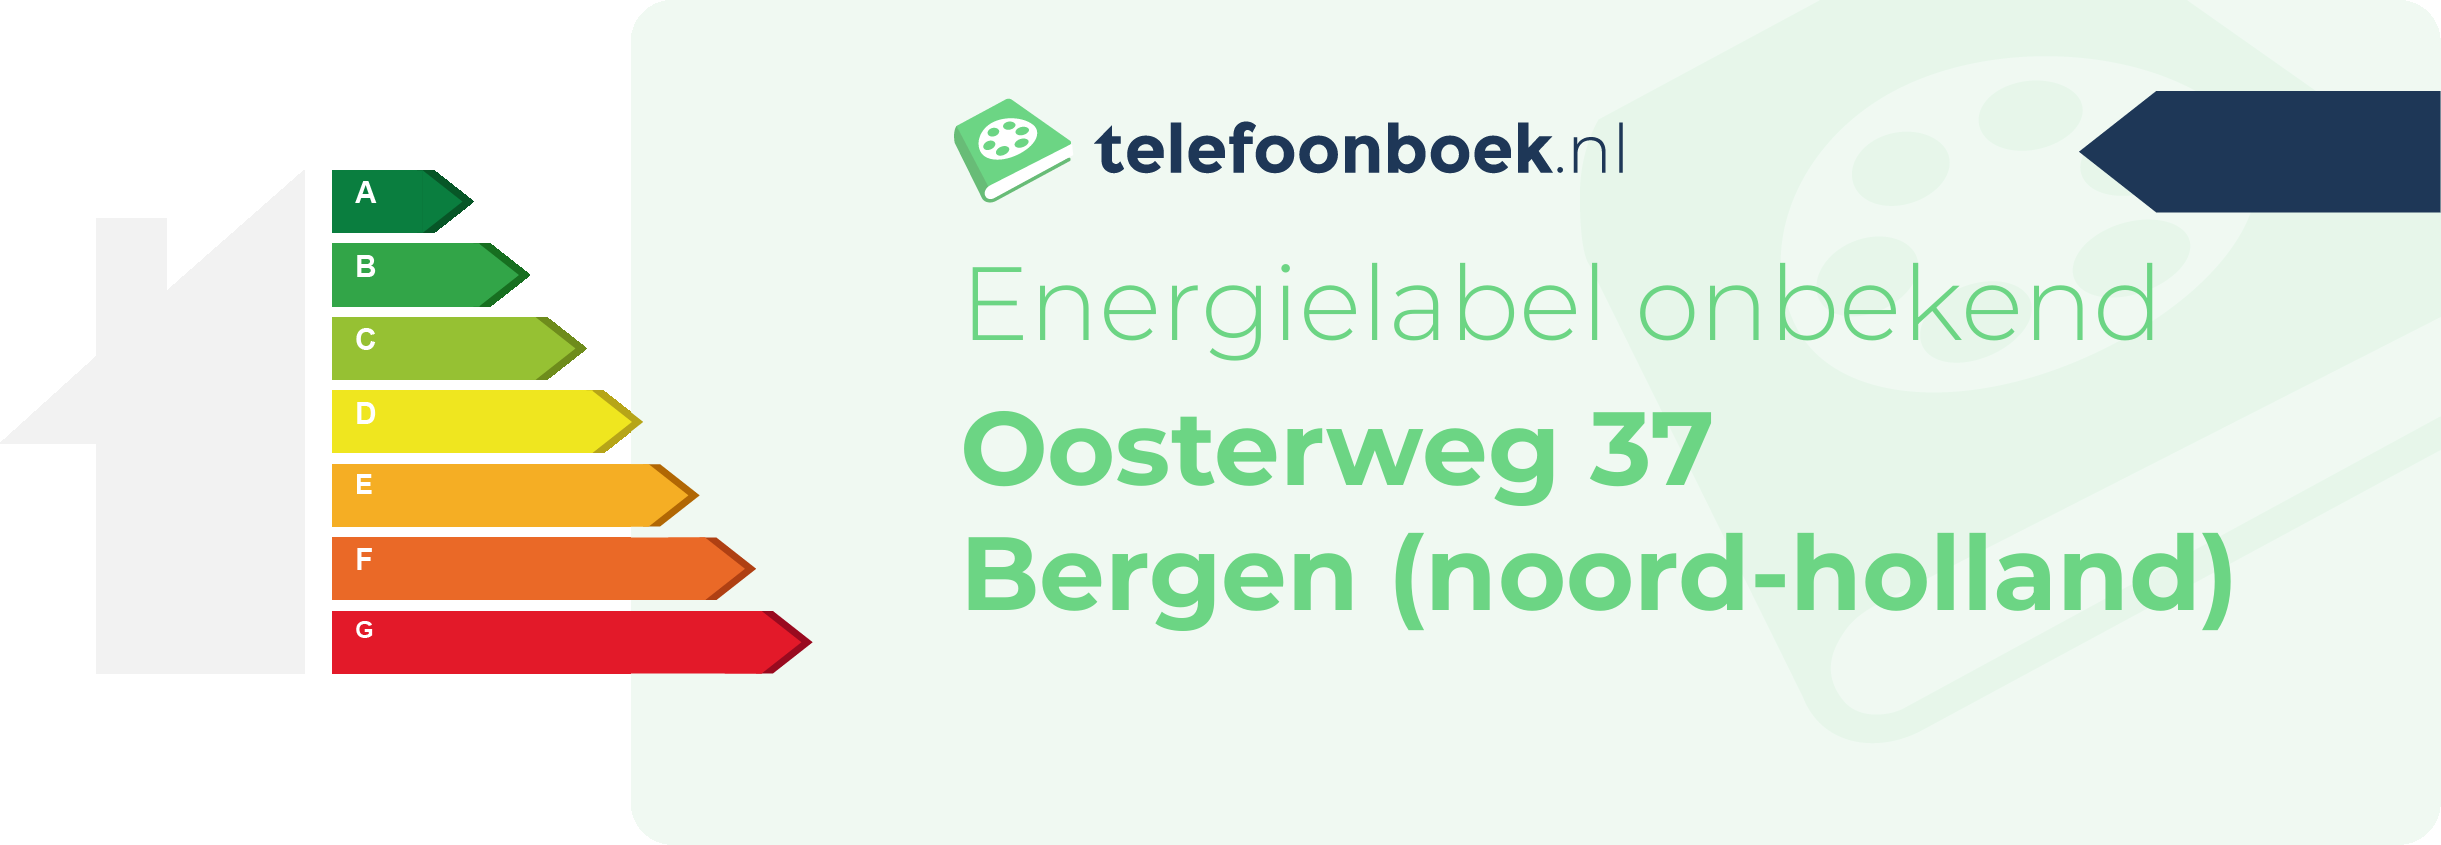 Energielabel Oosterweg 37 Bergen (Noord-Holland)